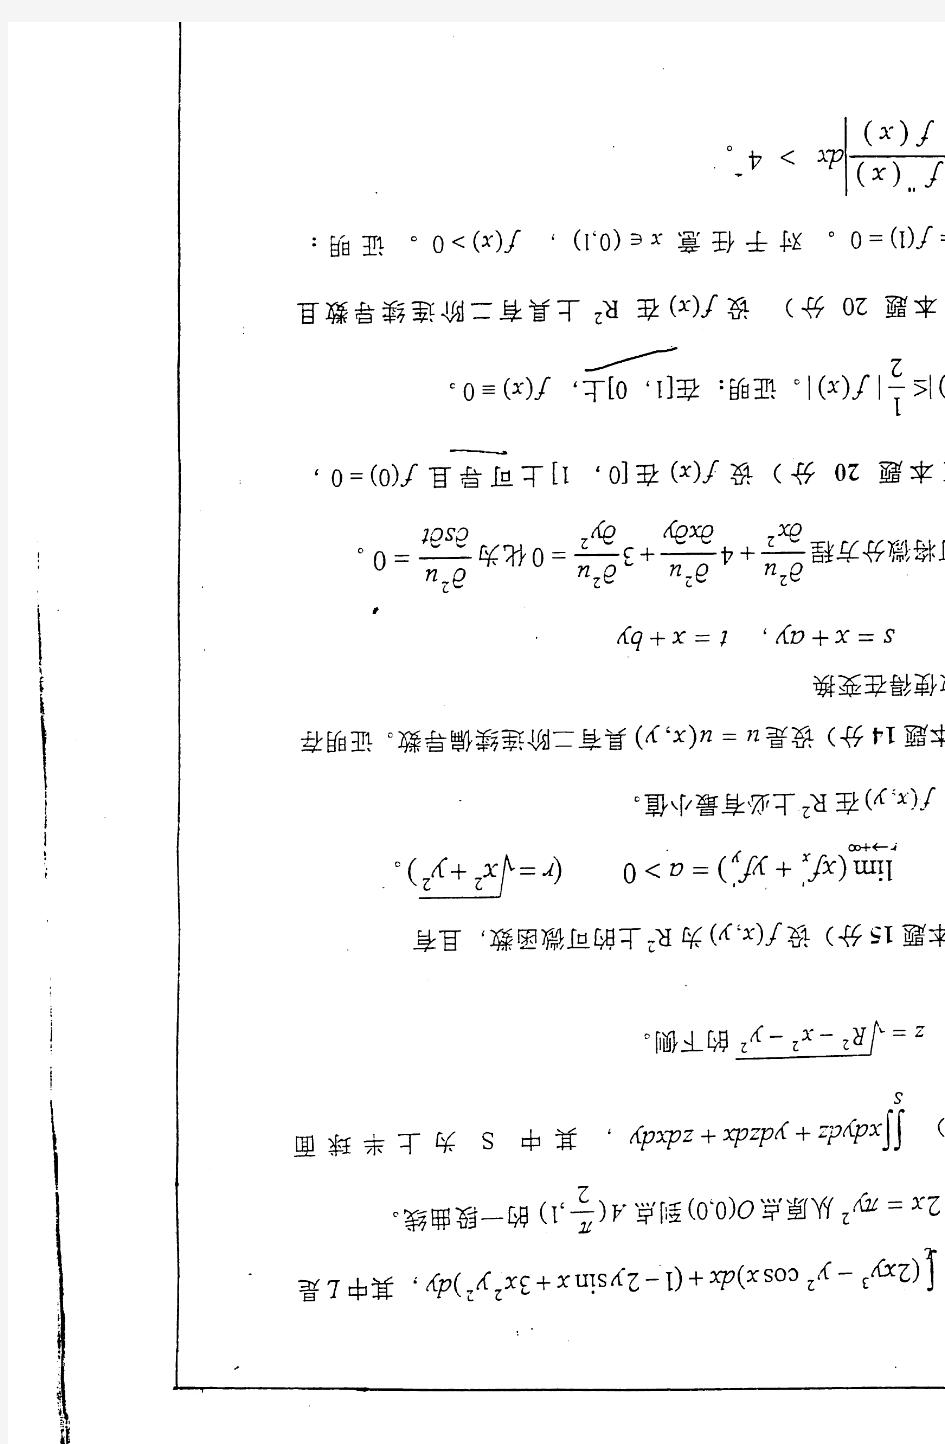 2007年四川大学数学分析考研真题-考研真题资料